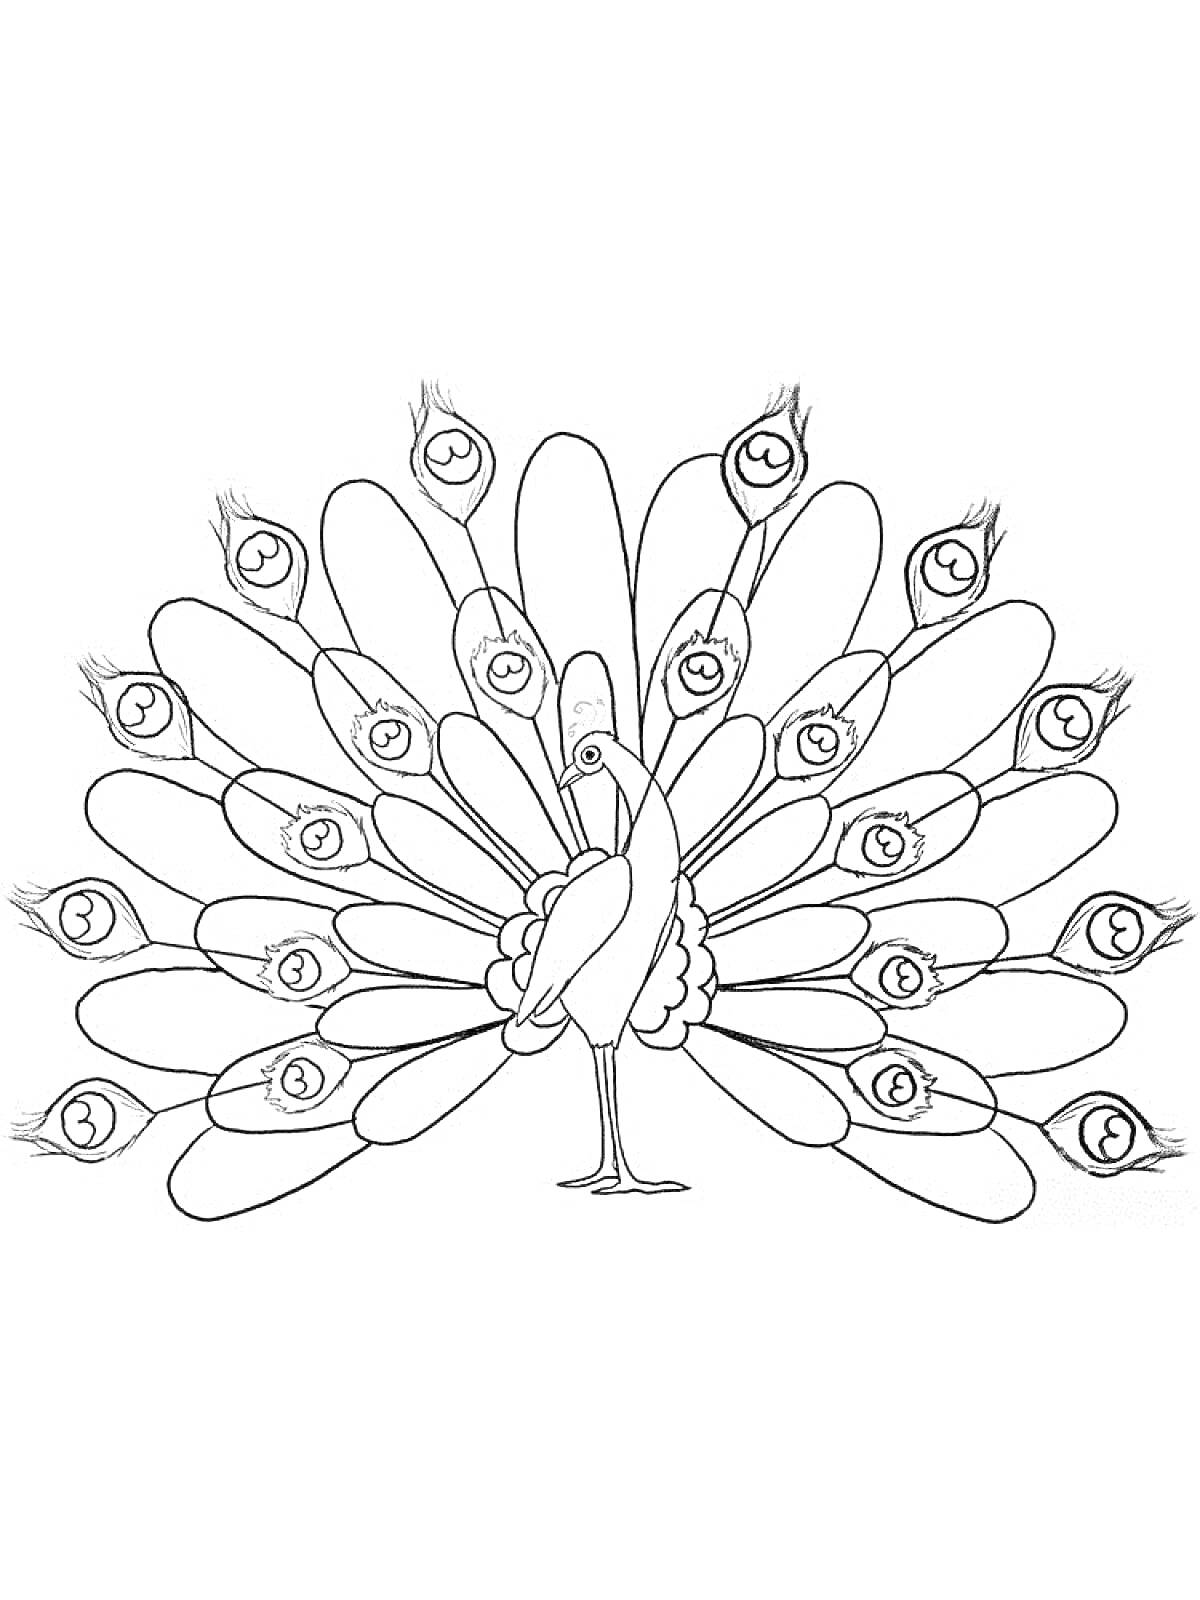 Раскраска Павлиний хвост с узором на перьях и туловищем павлина для раскрашивания